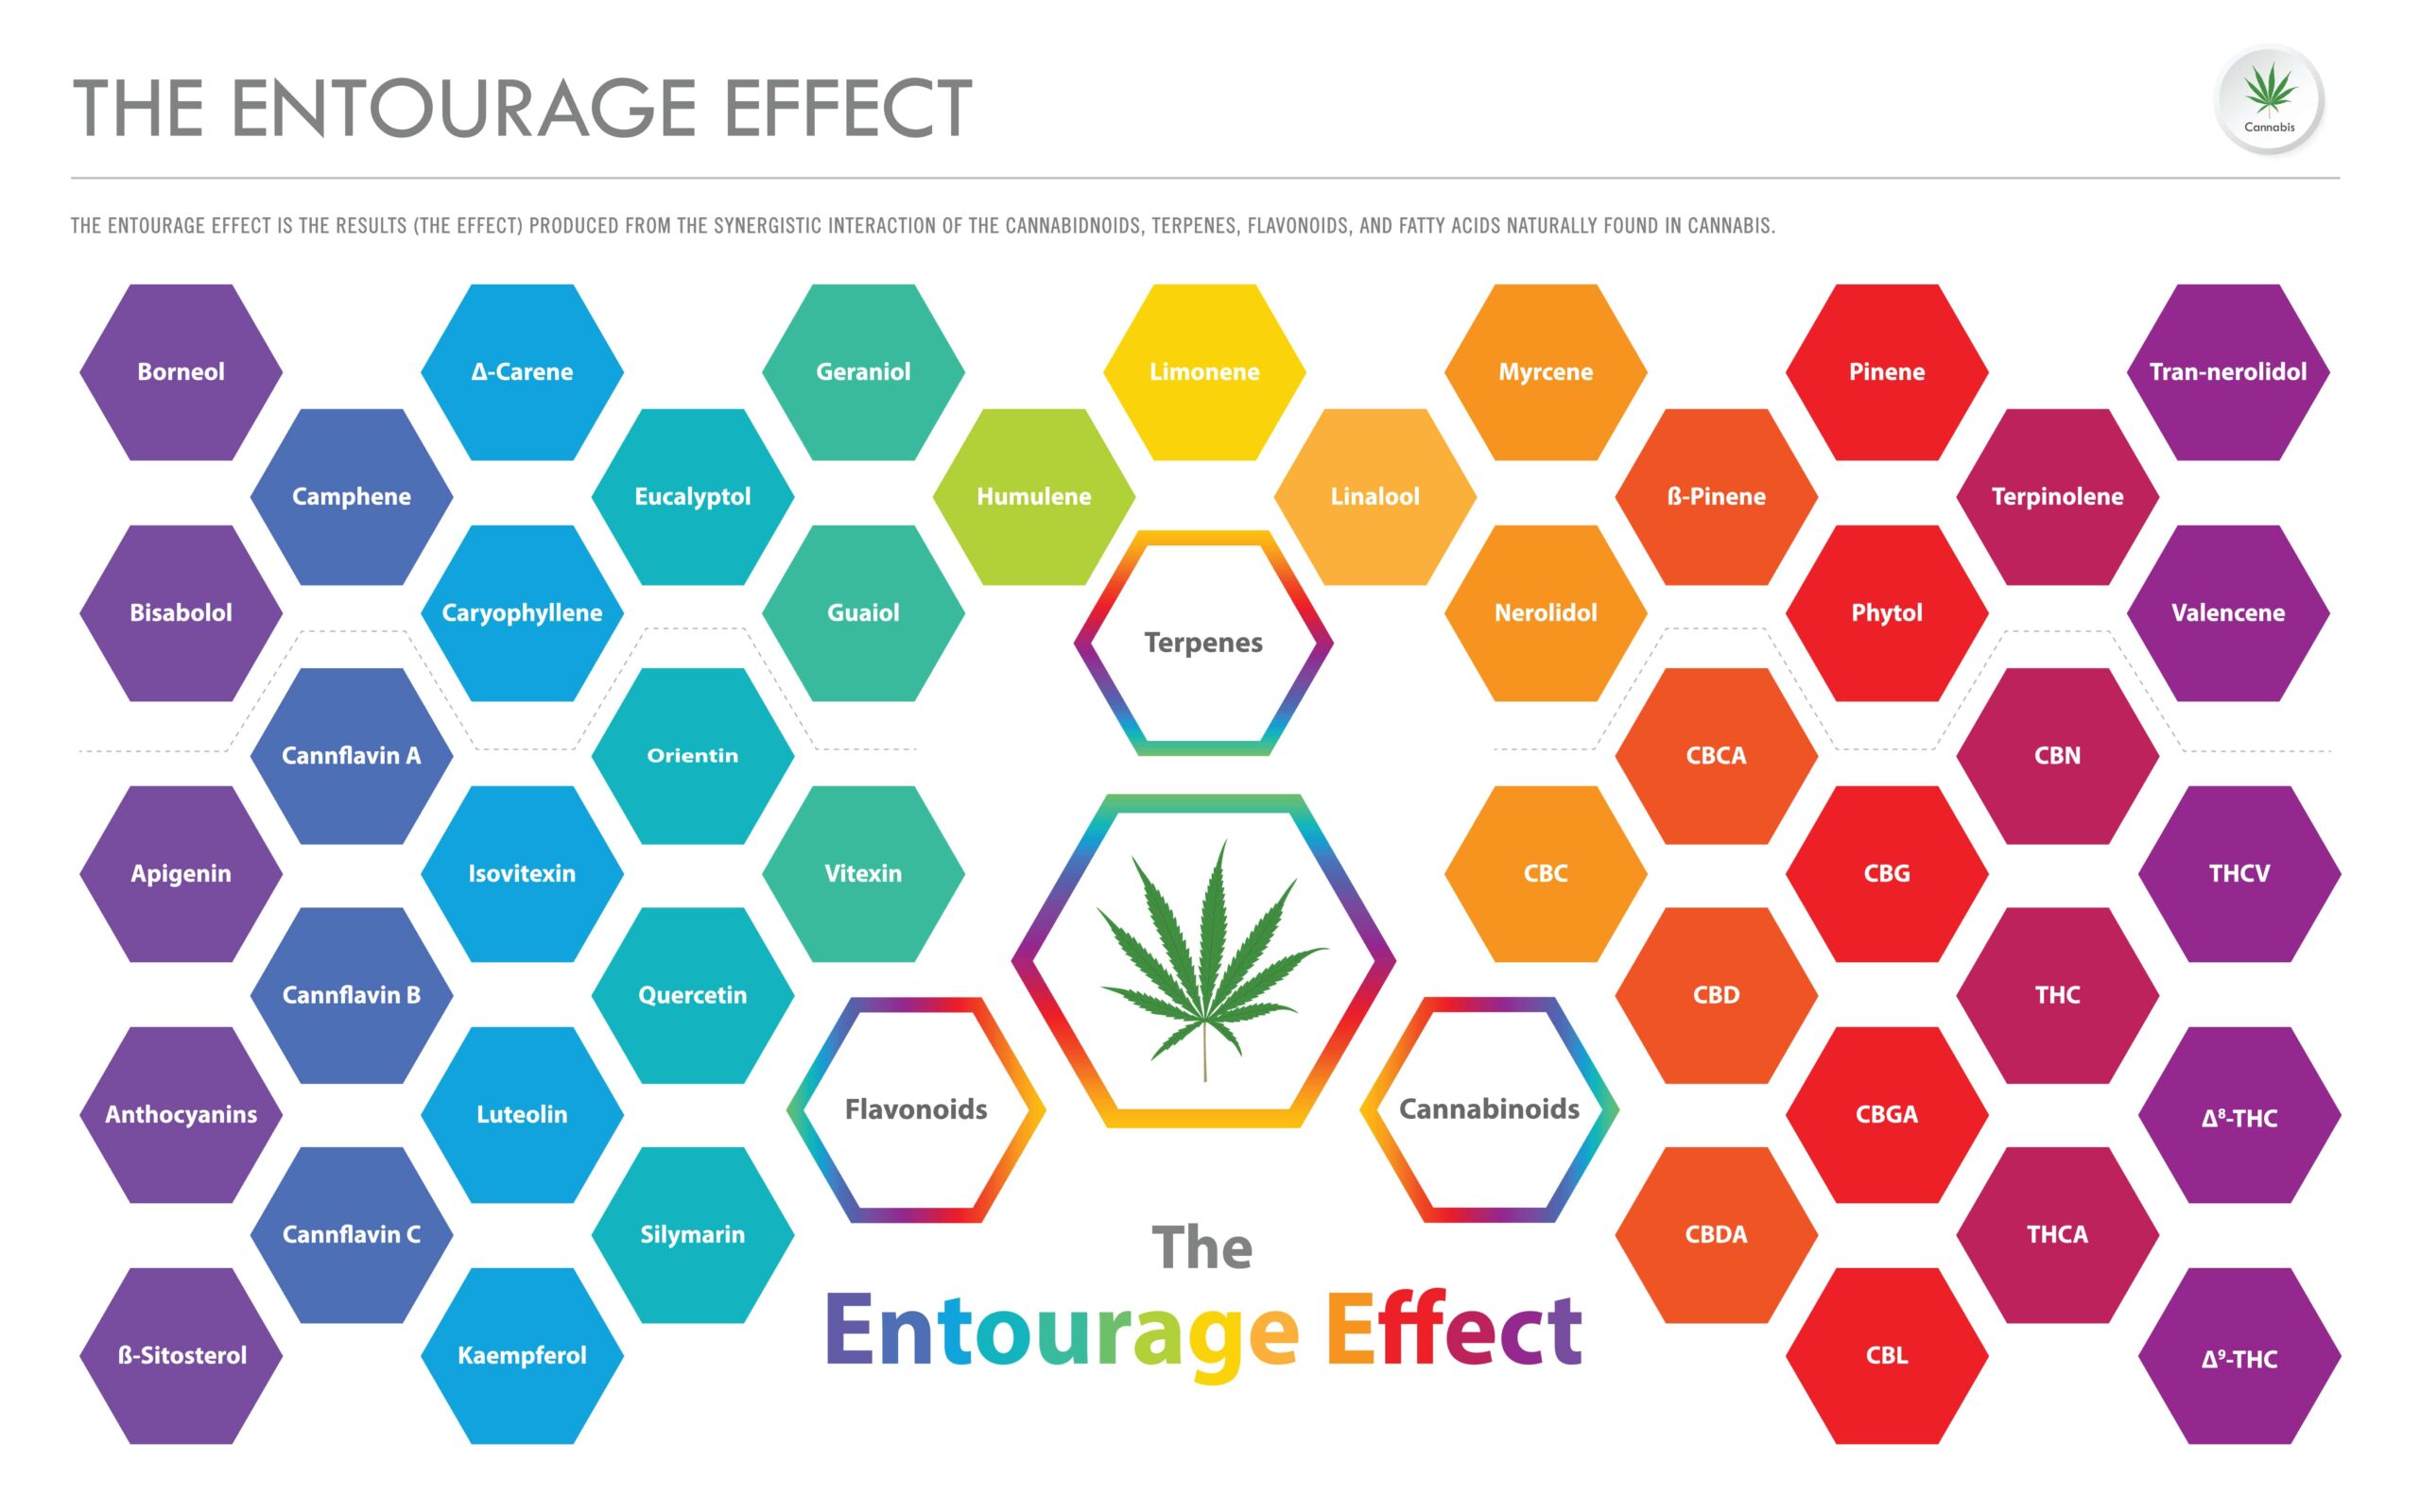 Bandbreite an sekundären Cannabis-Stoffen, die miteinander einen Entourage-Effekt haben können